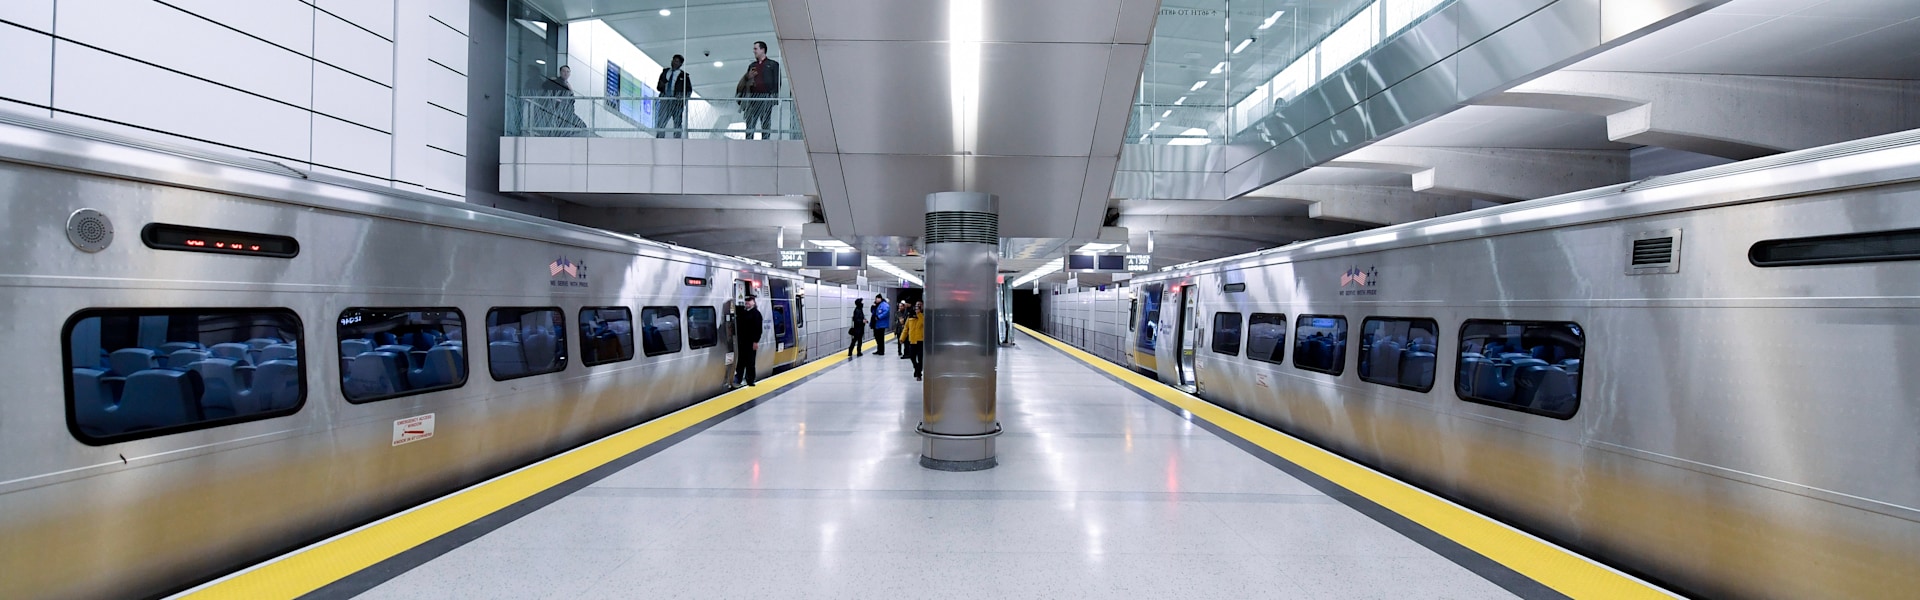 רכבת התחתית המרכזית של סן פרנסיסקו שנפתחה בינואר / צילום: Reuters